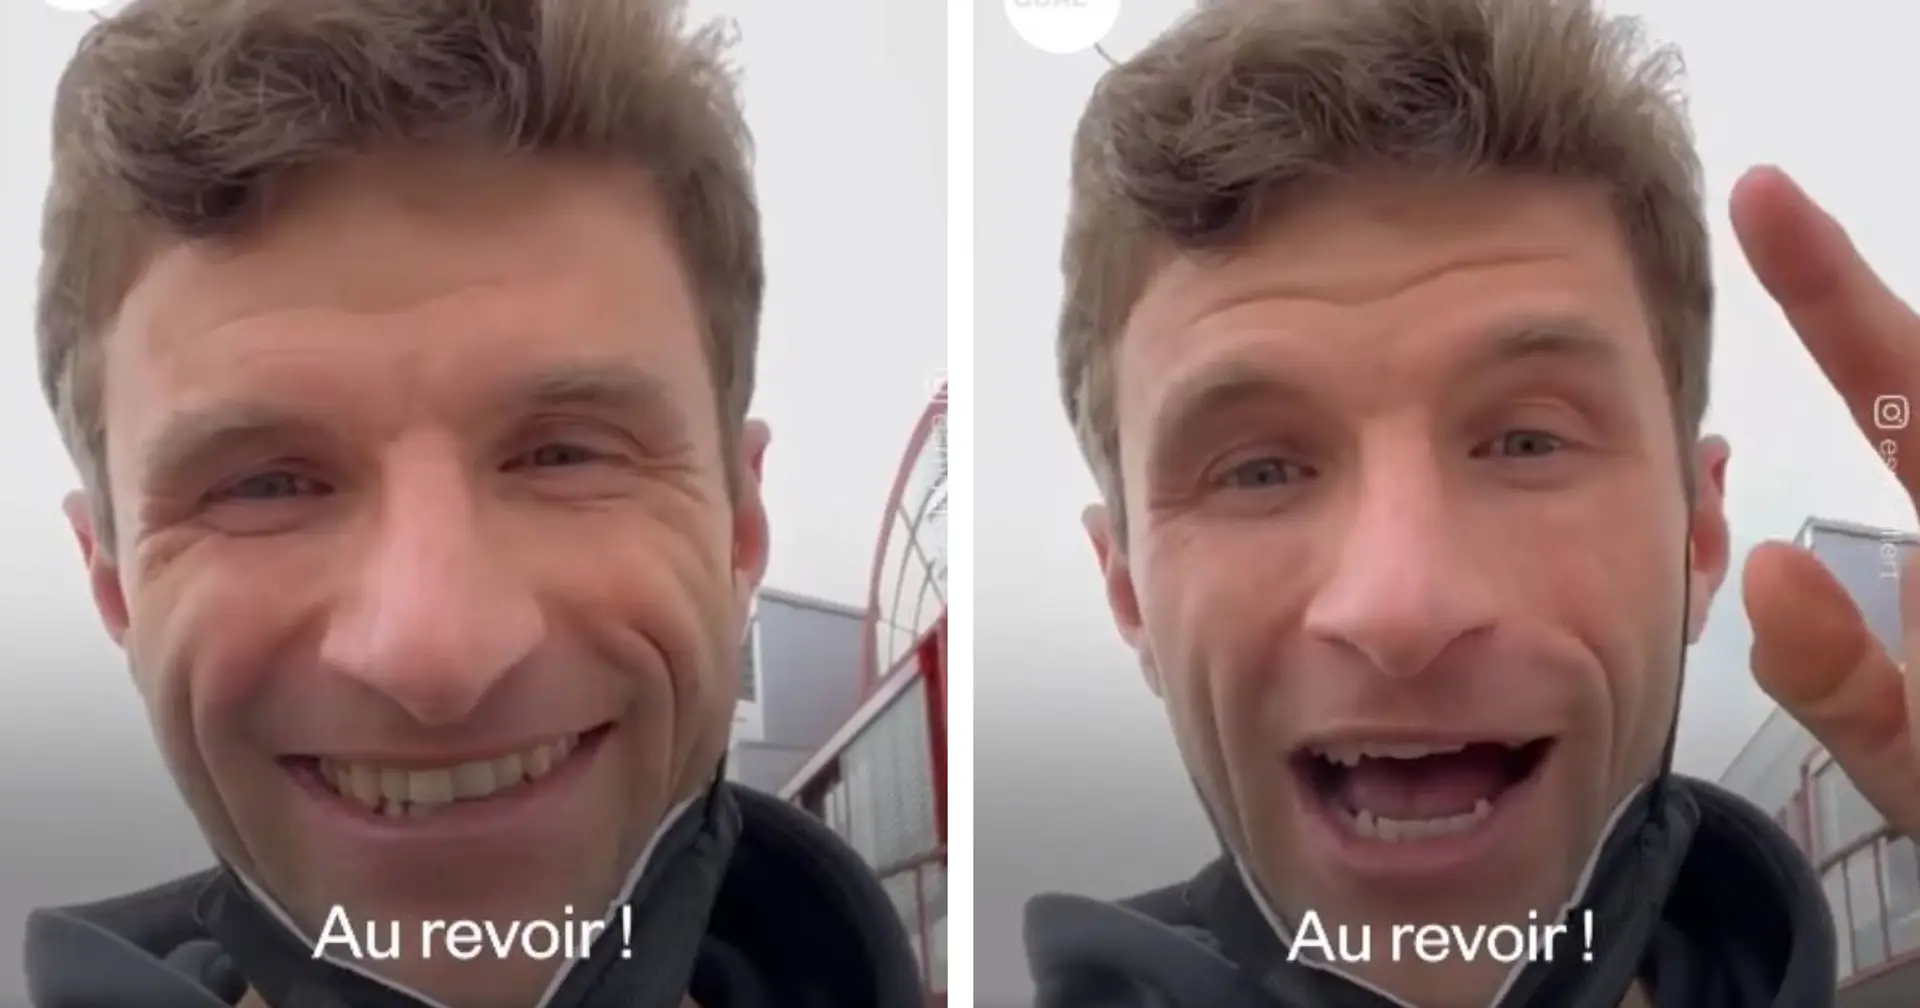 Müller erklärt, was er mit seiner berühmten "Au revoir!"-Aussage vor dem Duell vs. PSG im Jahr 2021 meinte, die die Franzosen verärgerte